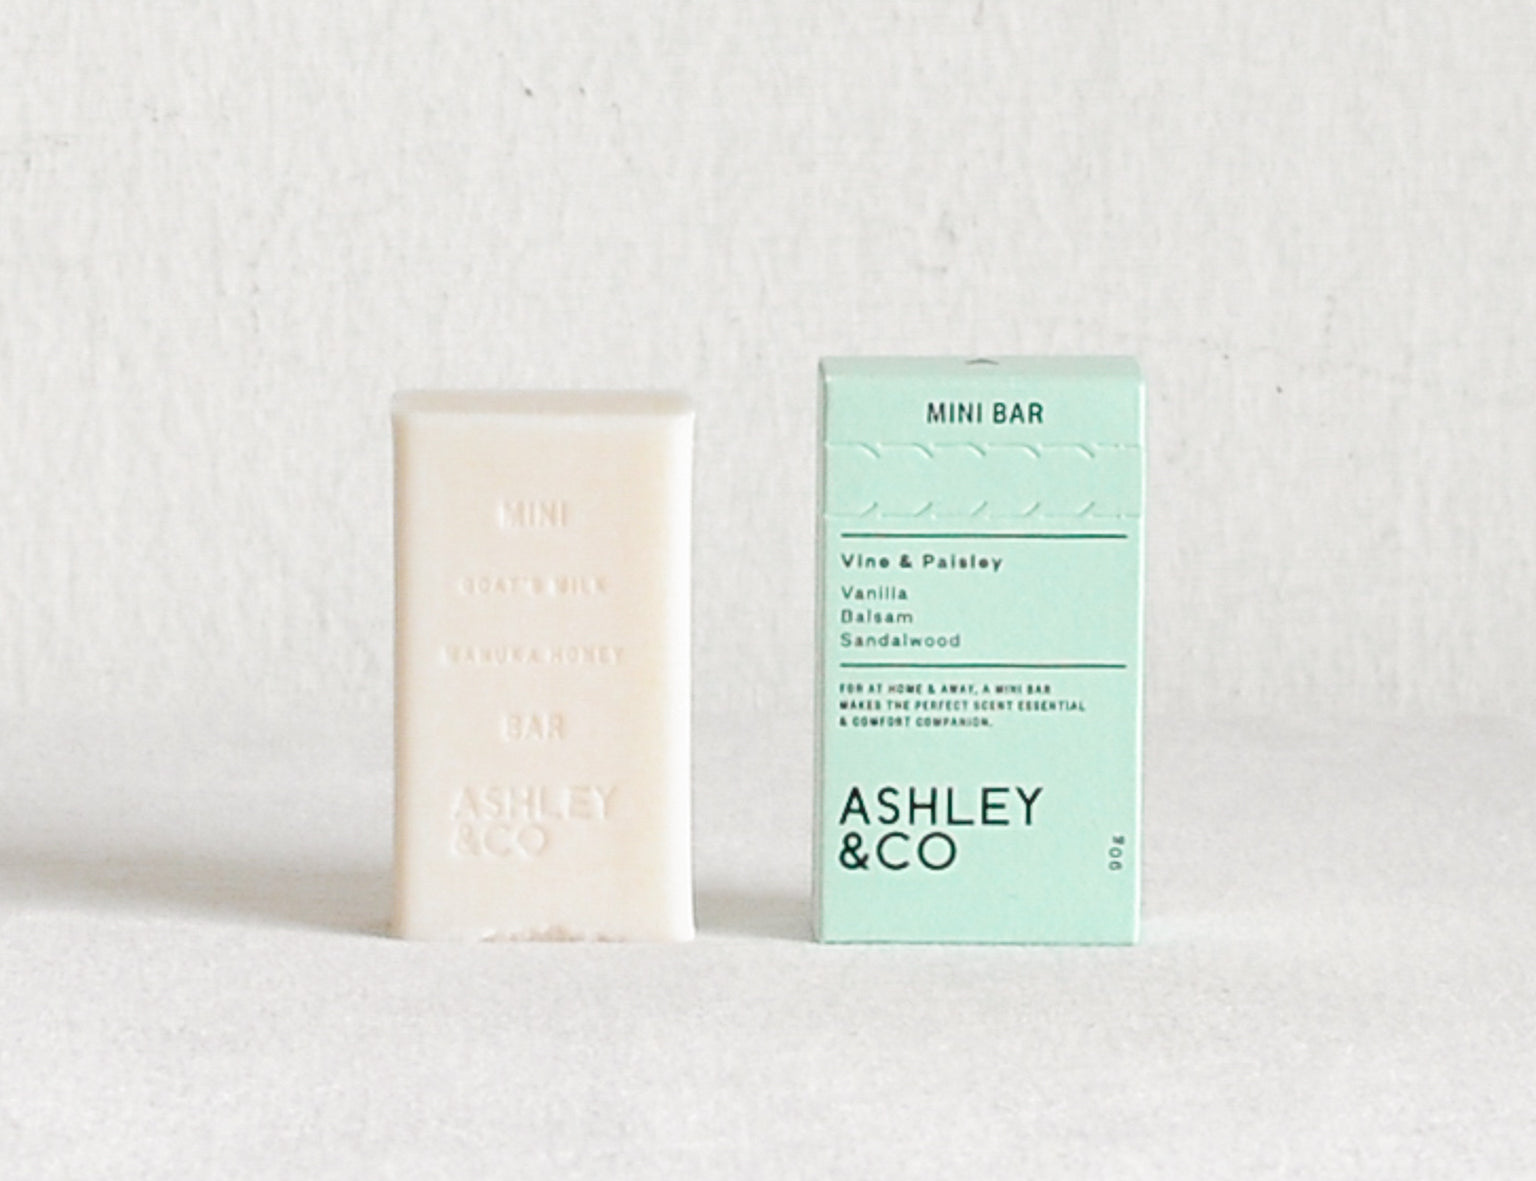 Ashley & Co Mini Soap Bar - Vine & Paisley